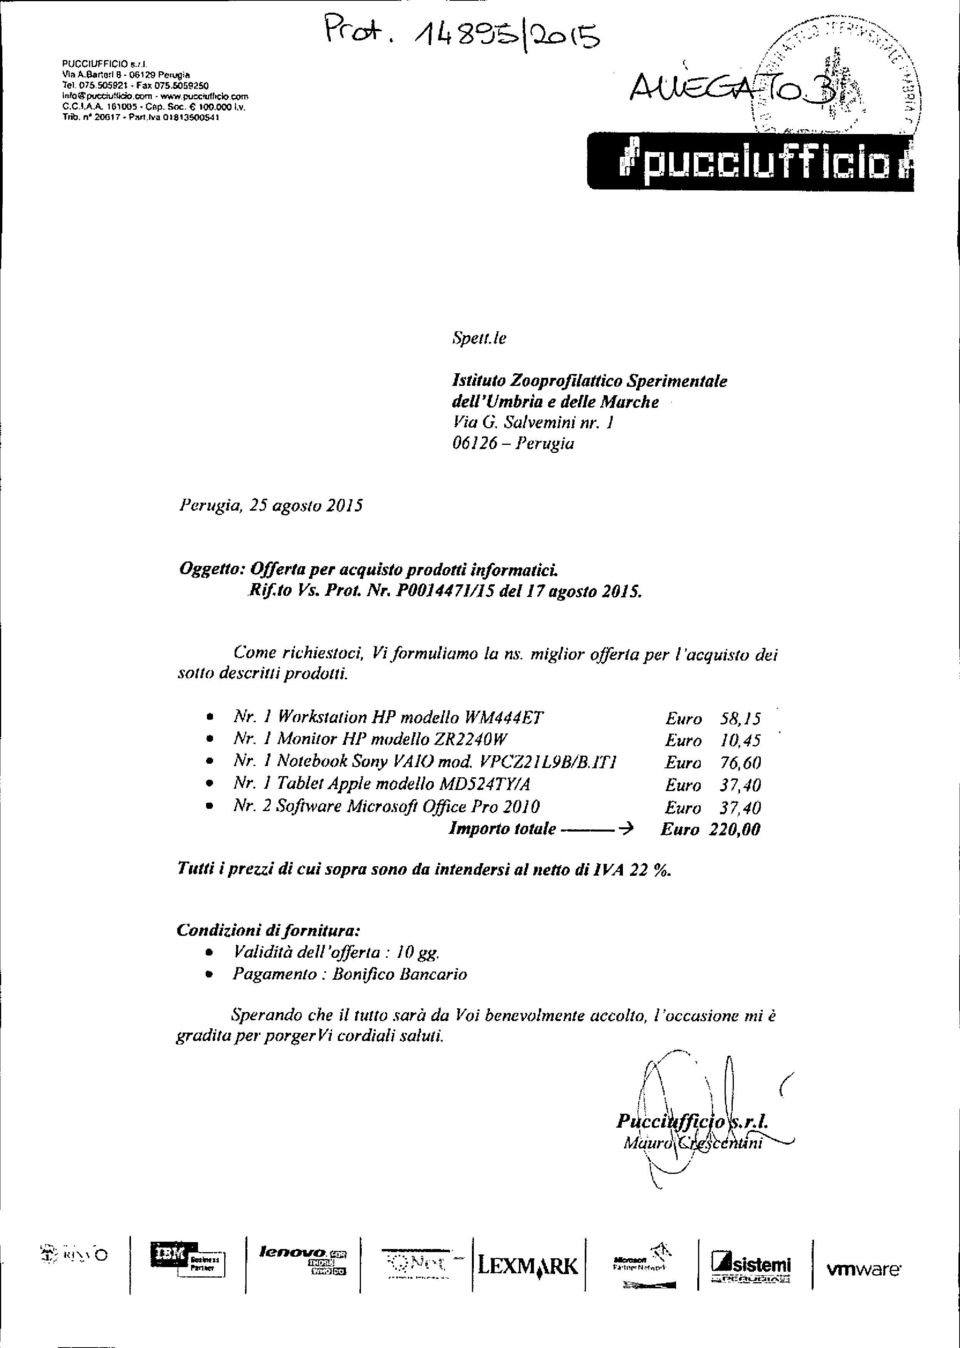 1 06126 - Perugia Perugia, 25 agosto 2015 Oggetto: Offerta per acquisto prodotti informaticl Rif.to Vs. Prot. Nr. 1'0014471115 del 17agosto 2015. Come richiestoci, Vi formuliamo lo ns.